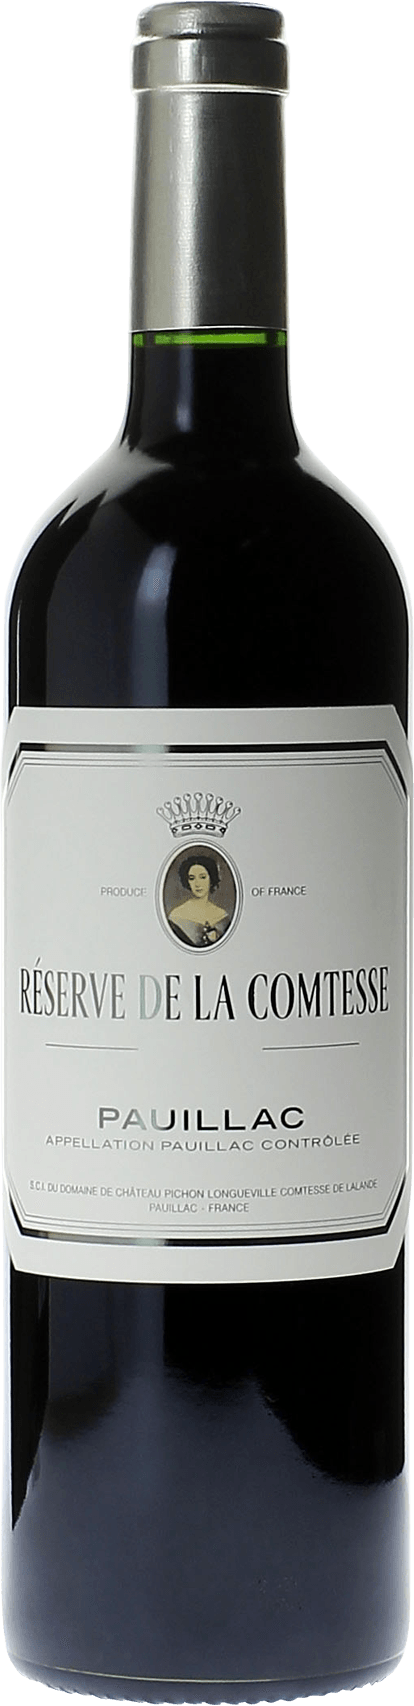 Reserve de la comtesse 2015 2nd Vin de Pichon Comtesse Pauillac, Bordeaux rouge